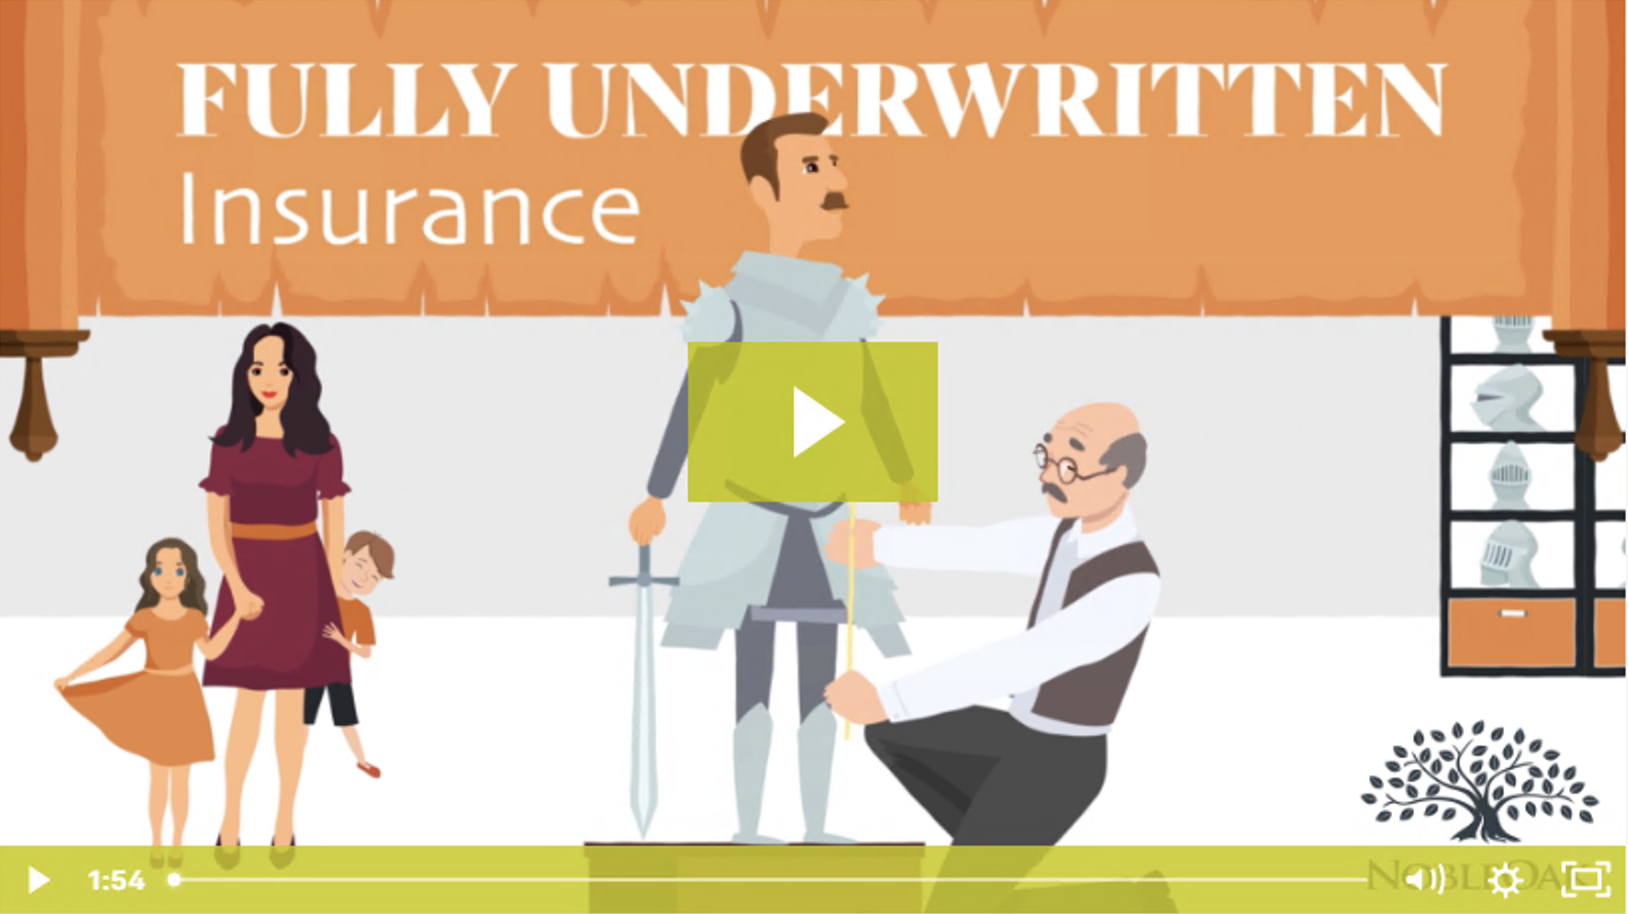 NobleOak Fully Underwritten Insurance: Don’t settle for anything less